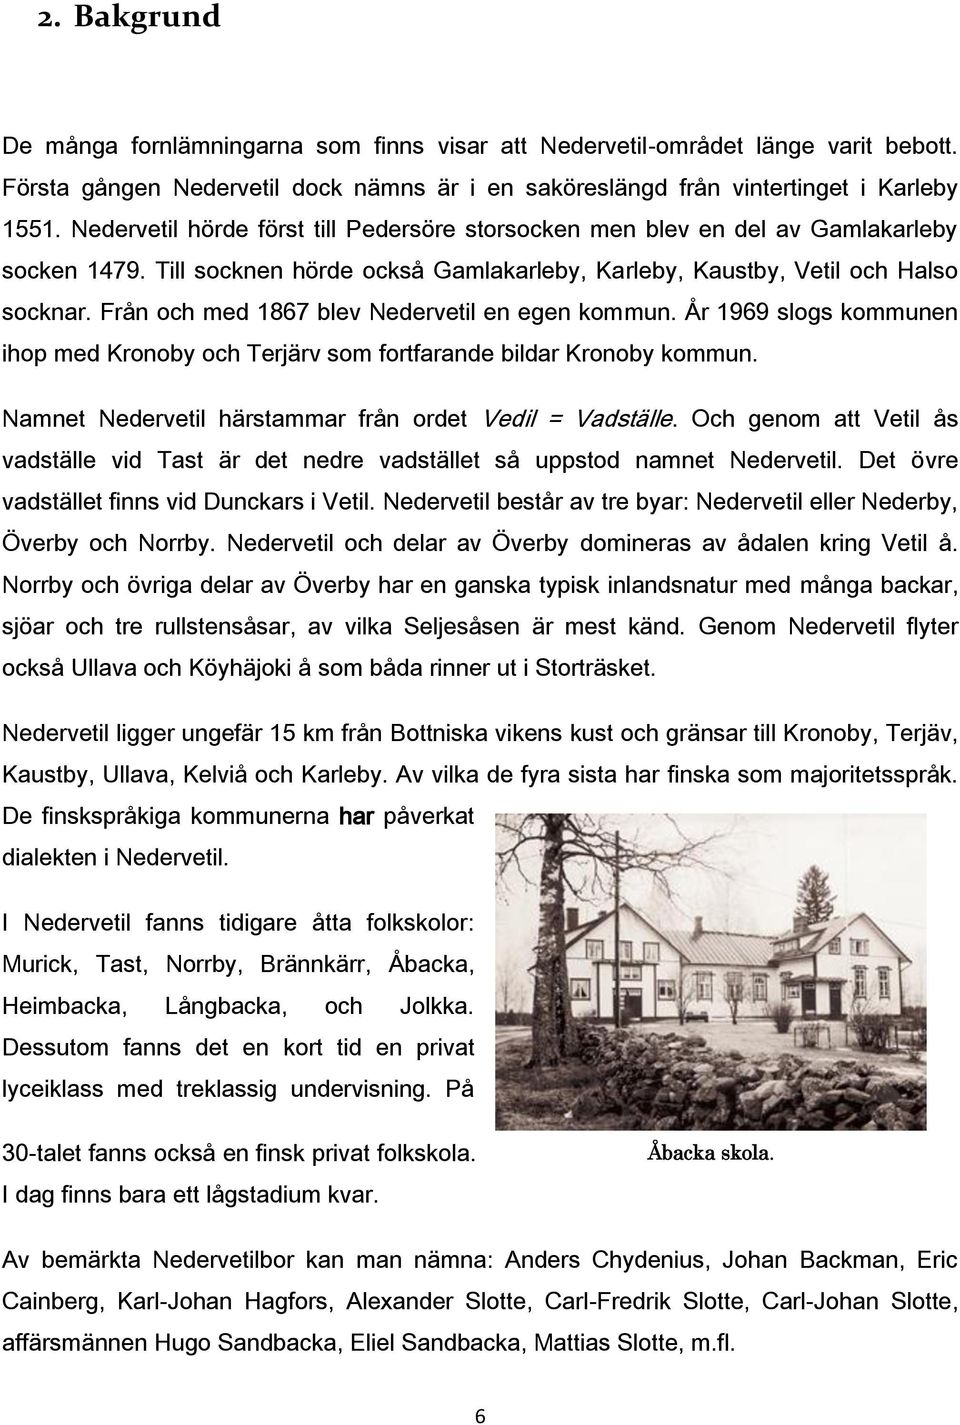 Från och med 1867 blev Nedervetil en egen kommun. År 1969 slogs kommunen ihop med Kronoby och Terjärv som fortfarande bildar Kronoby kommun. Namnet Nedervetil härstammar från ordet Vedil = Vadställe.